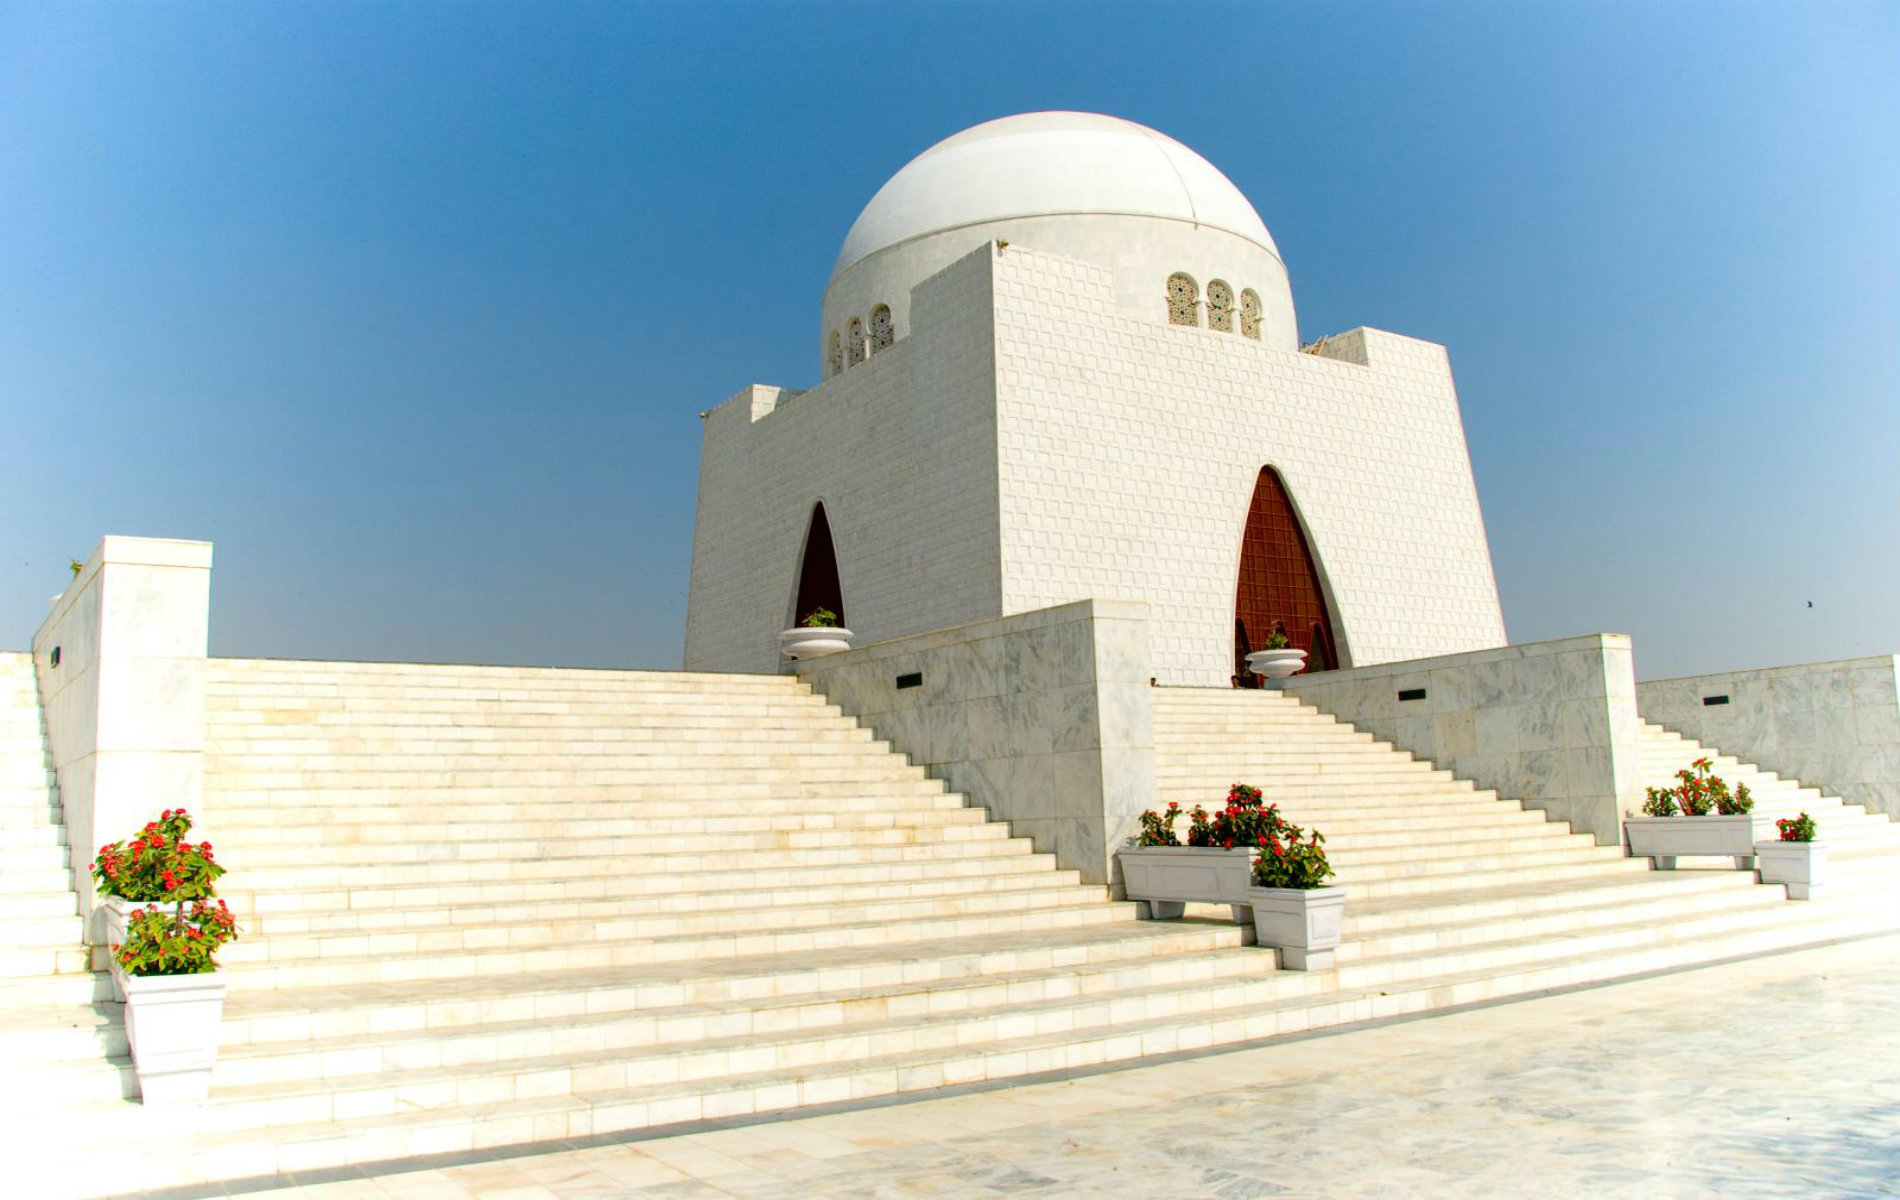 Mazar e Quaid - Tomb of Pakis